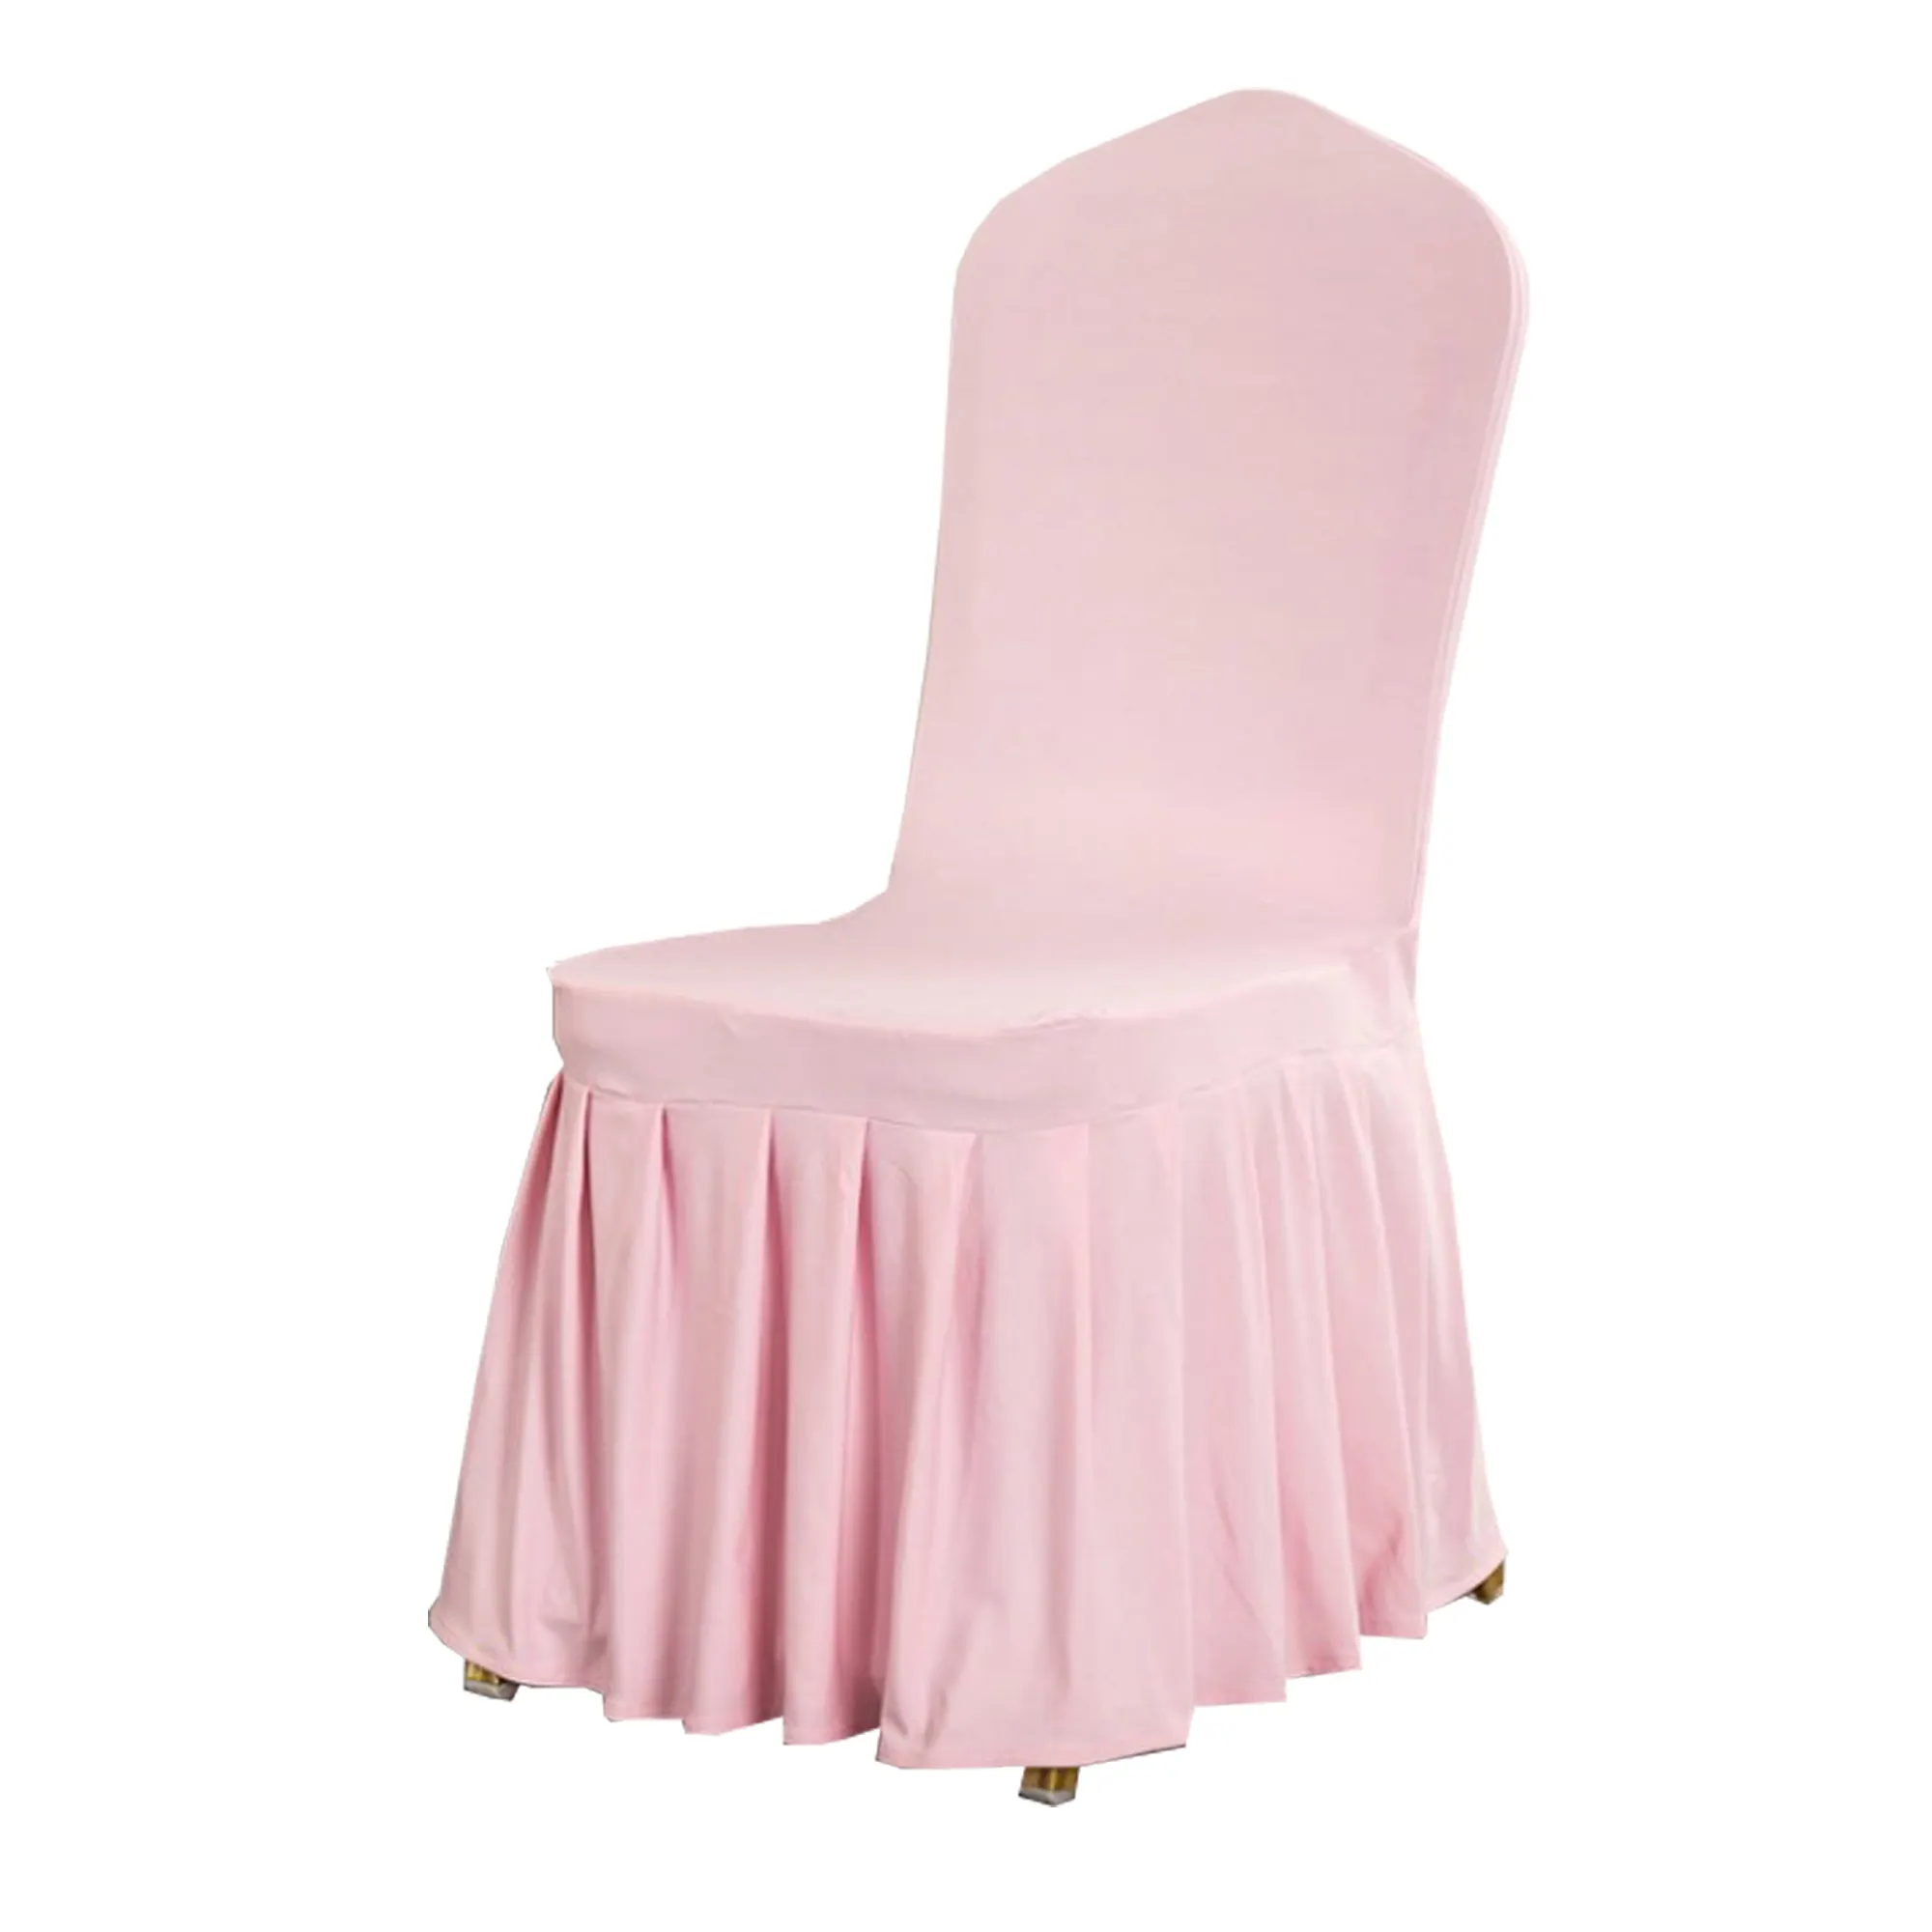 Elegant Blush Pink Ruffled Skirt Chair Cover for Wedding